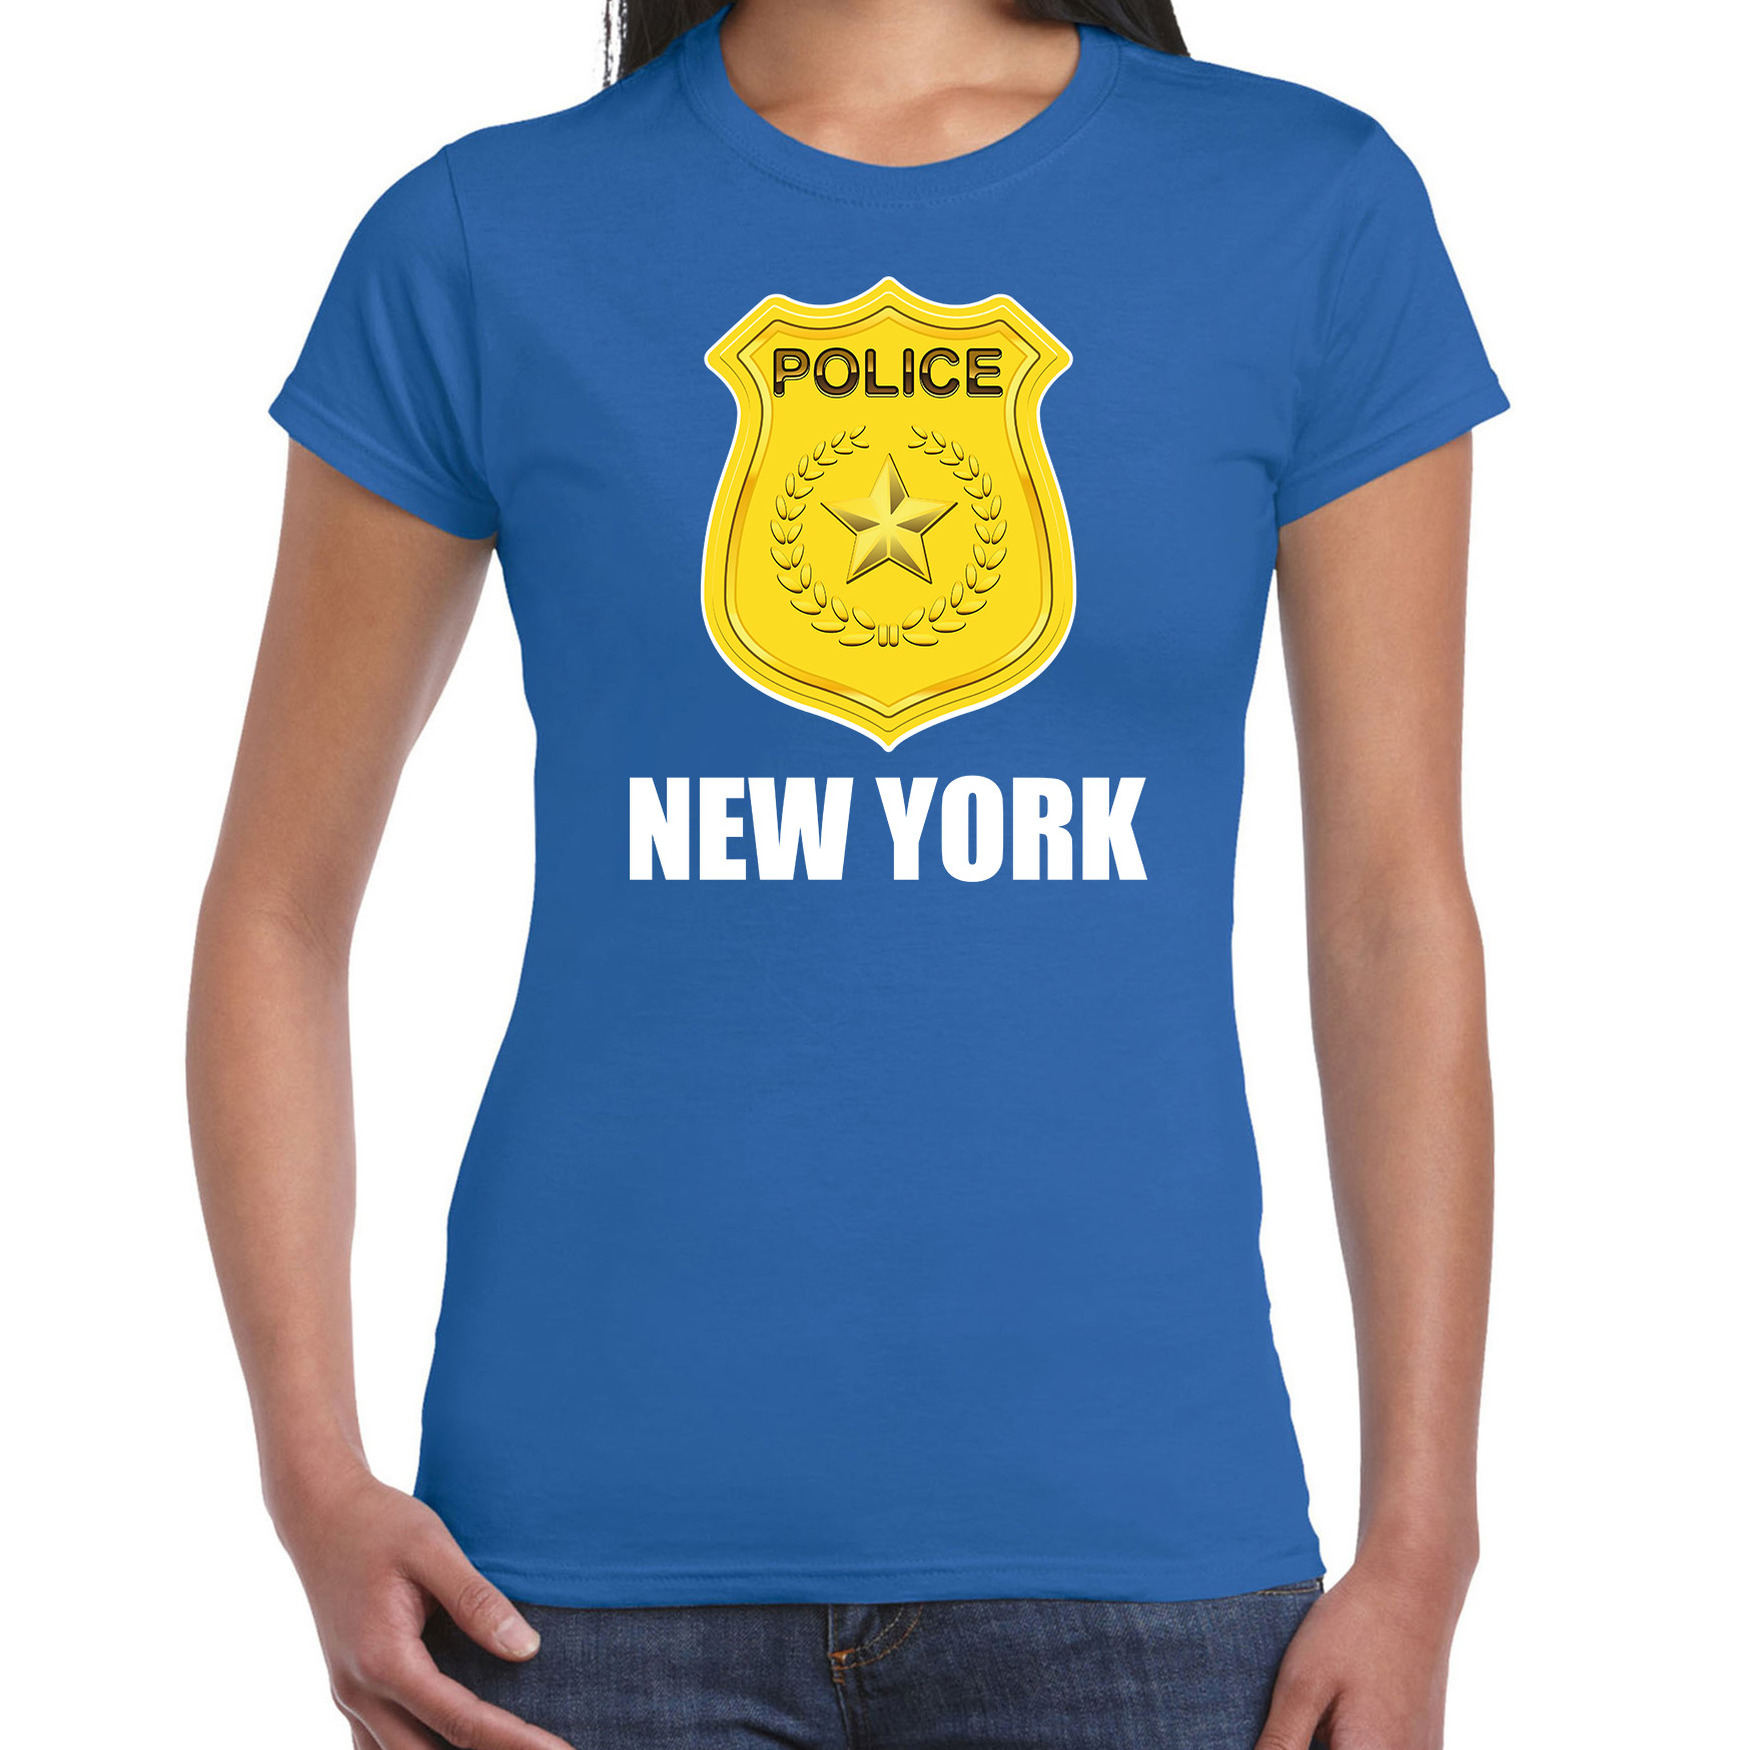 New York politie-police embleem t-shirt blauw voor dames